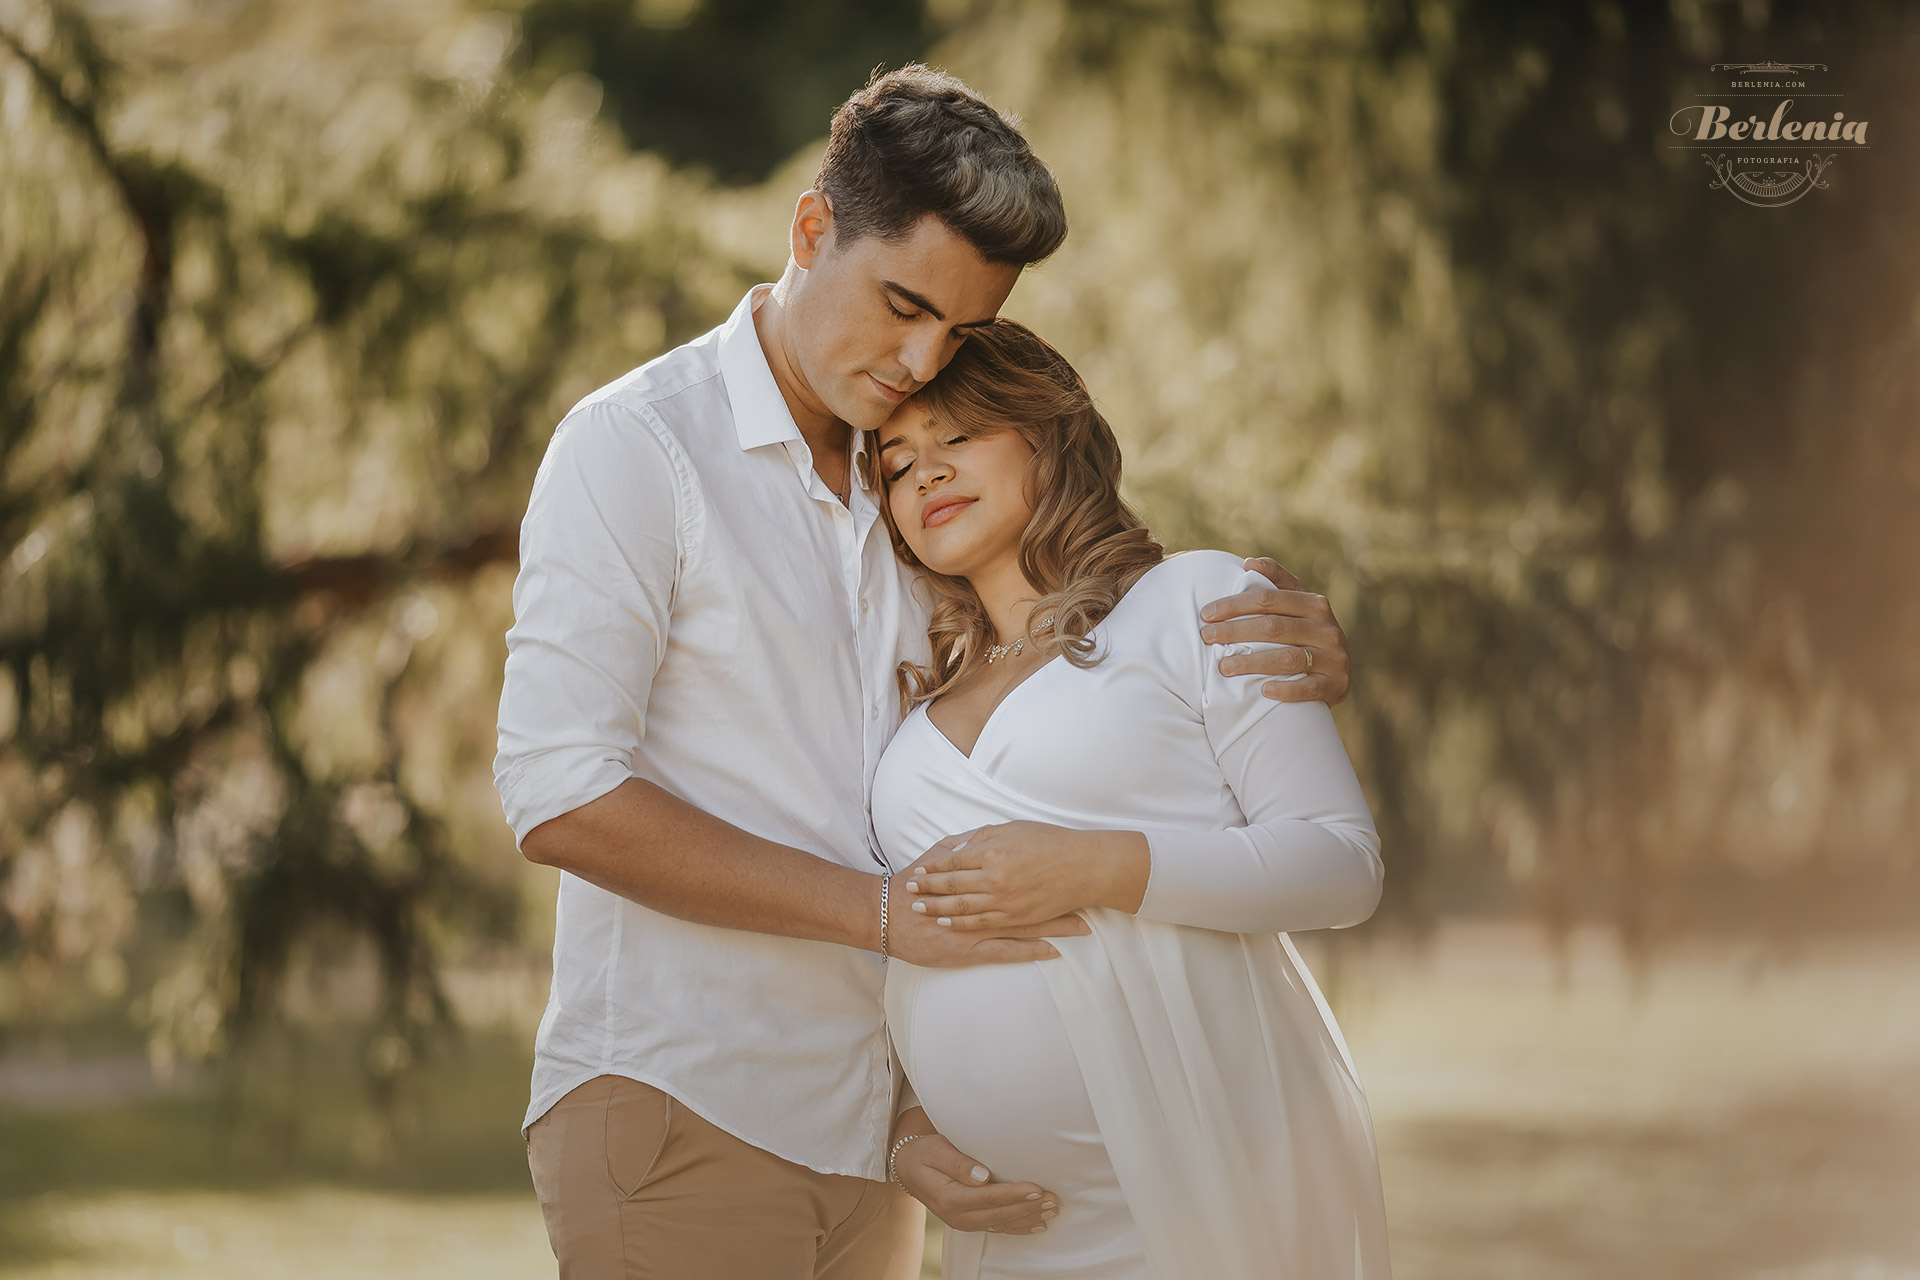 Fotografía de embarazo en pareja en Lago de Regatas, Palermo - Sesión de fotos embarazada en exterior - CABA, Buenos Aires, Argentina - Berlenia Fotografía - 02